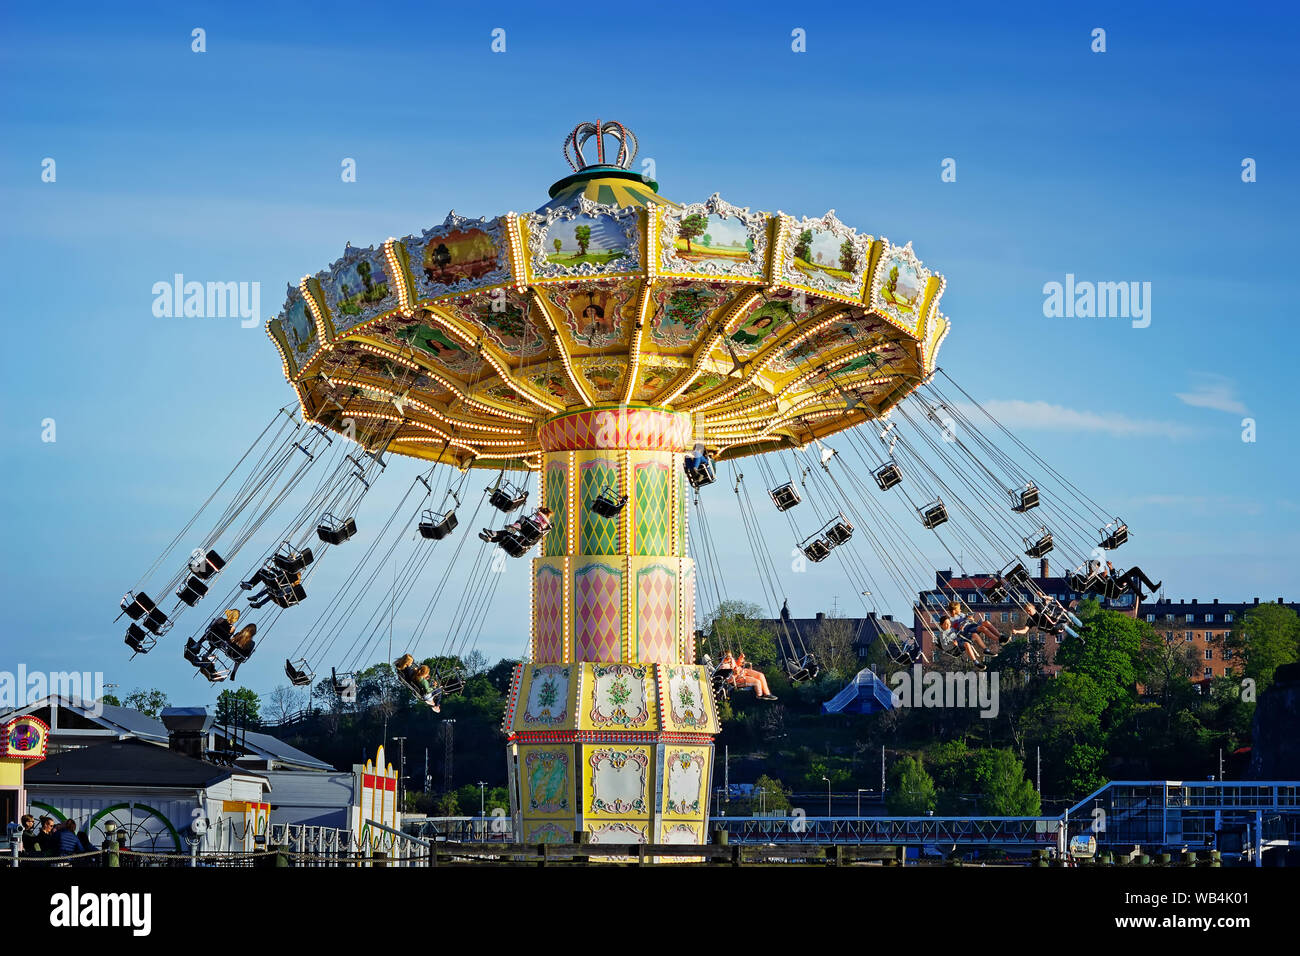 Les gens tourner dans Eclipse (grande roue) attraction du parc d'attractions Tivoli Grona Lund, Djurgarden, Stockholm Suède Banque D'Images